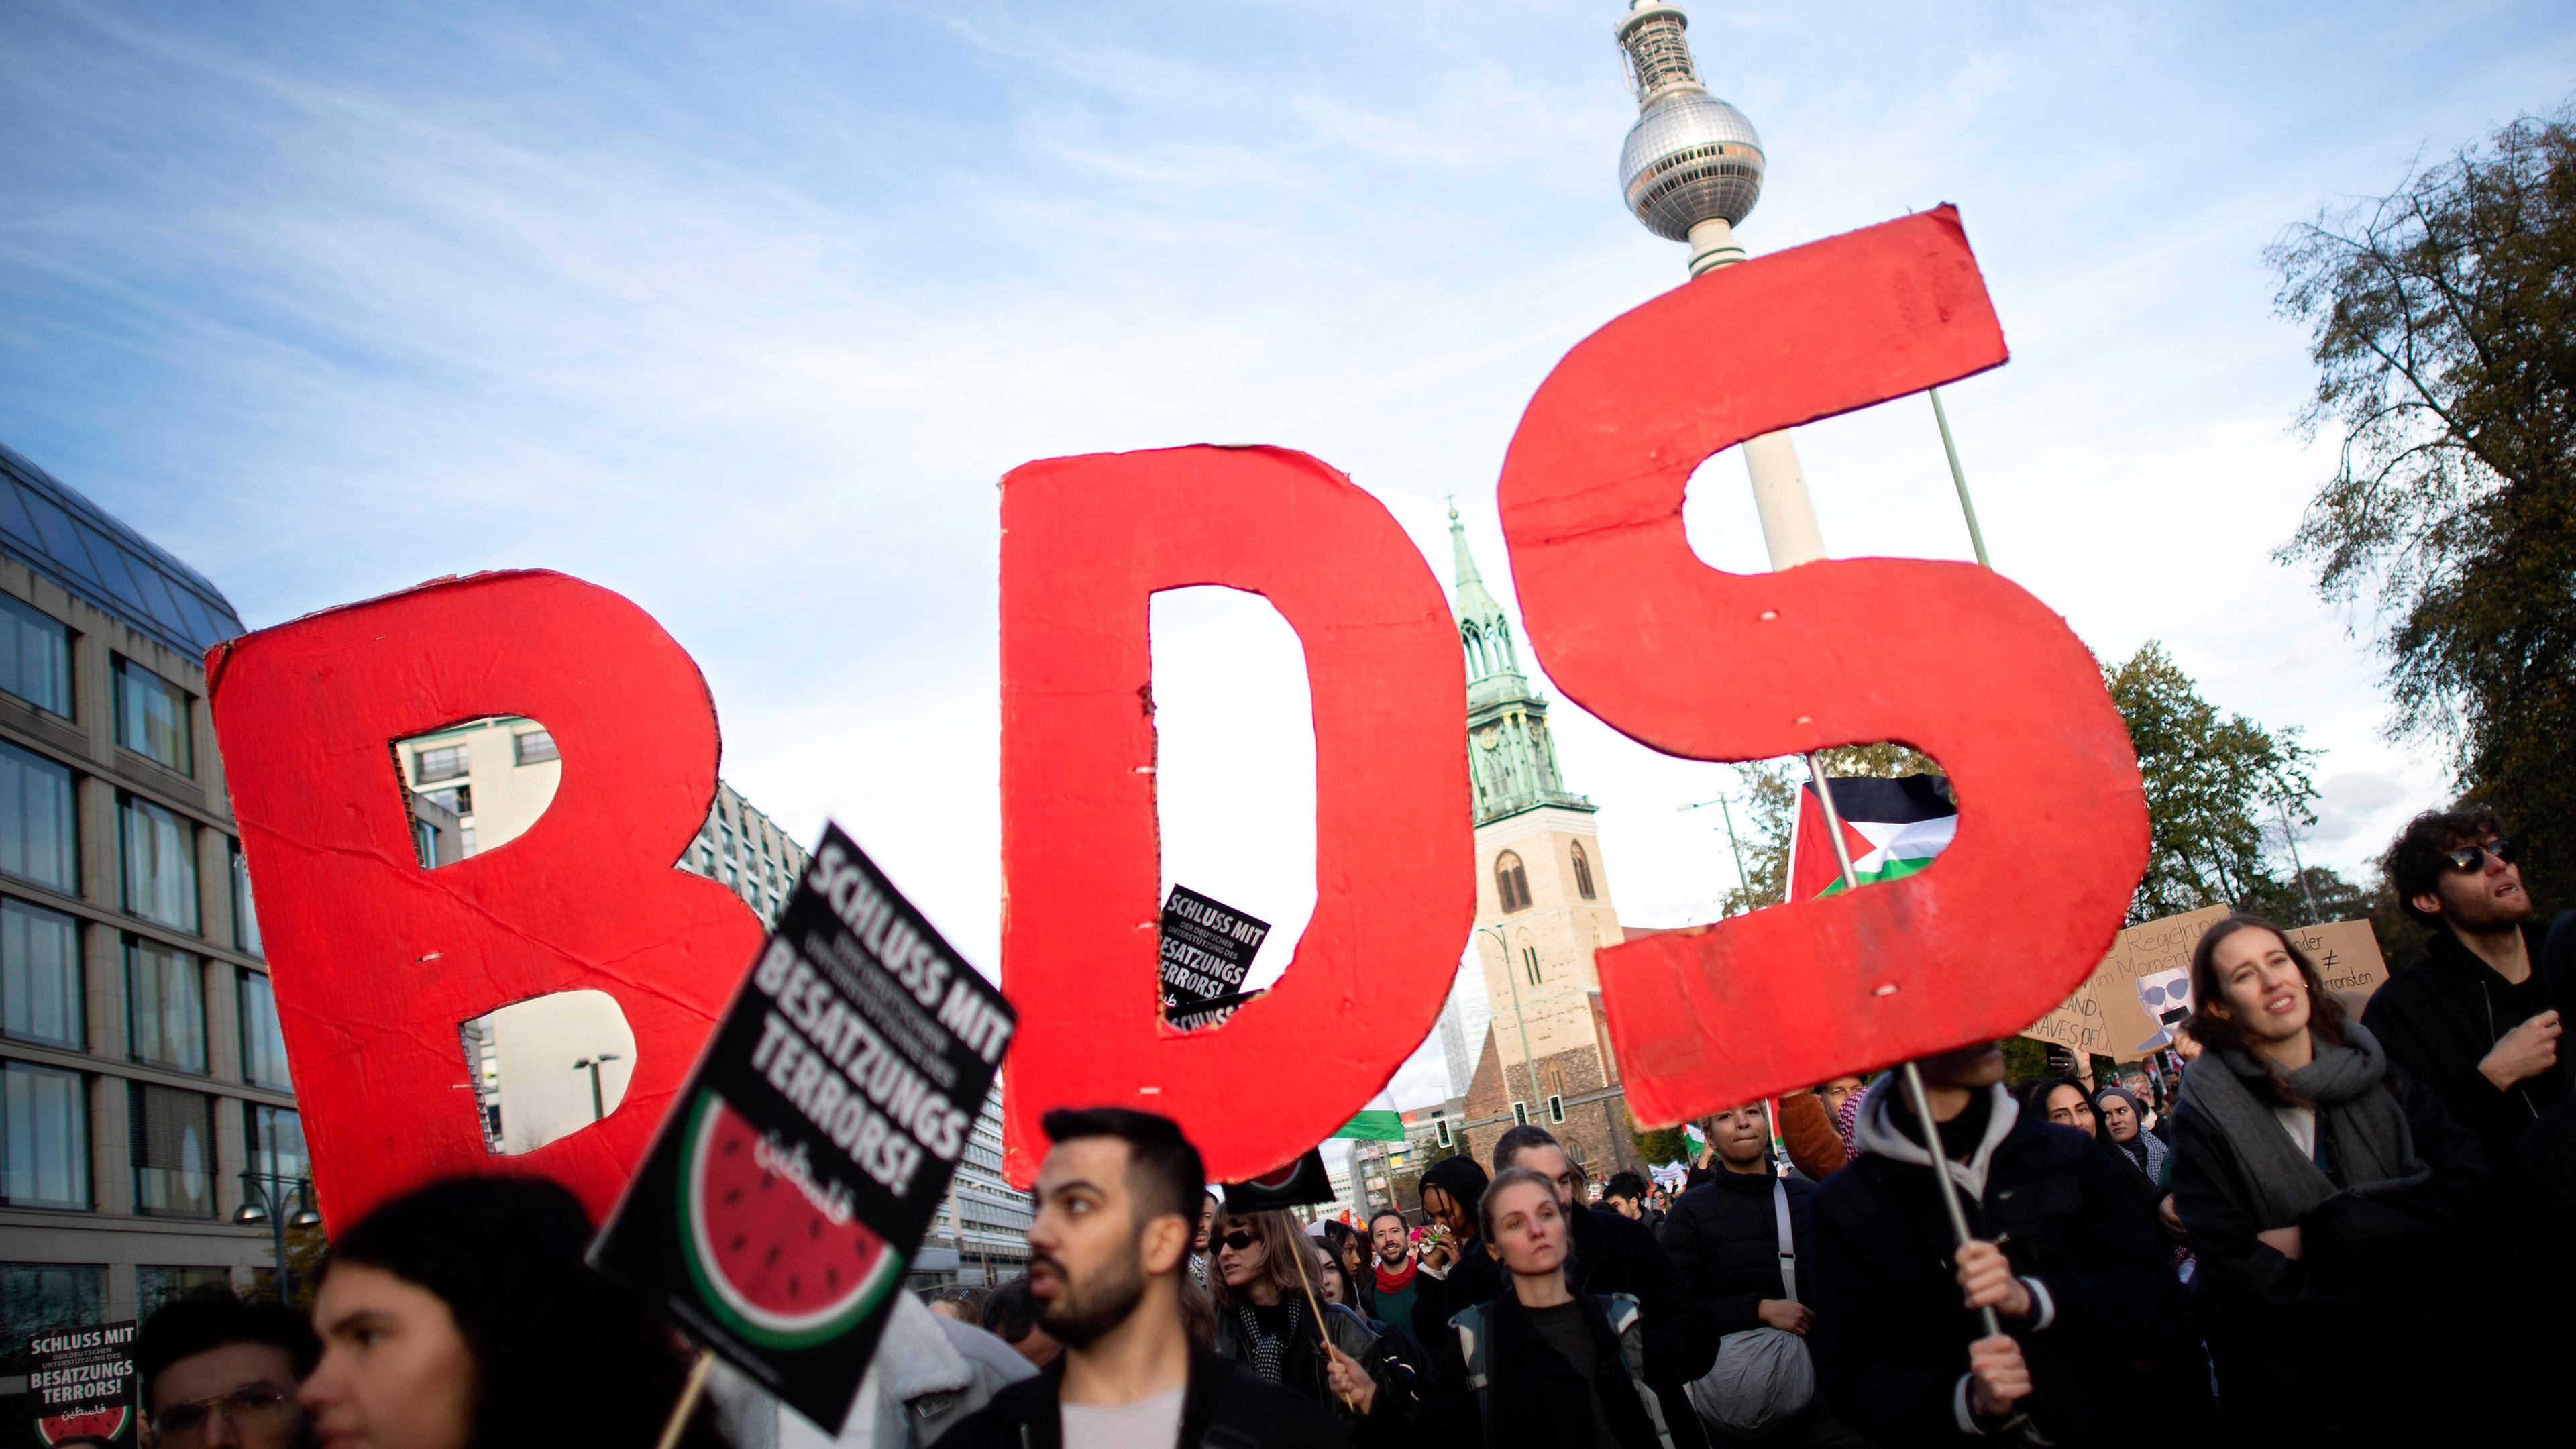 Archiv: Boykottbewegung BDS (Boycott, Disinvestment, Sanctions)